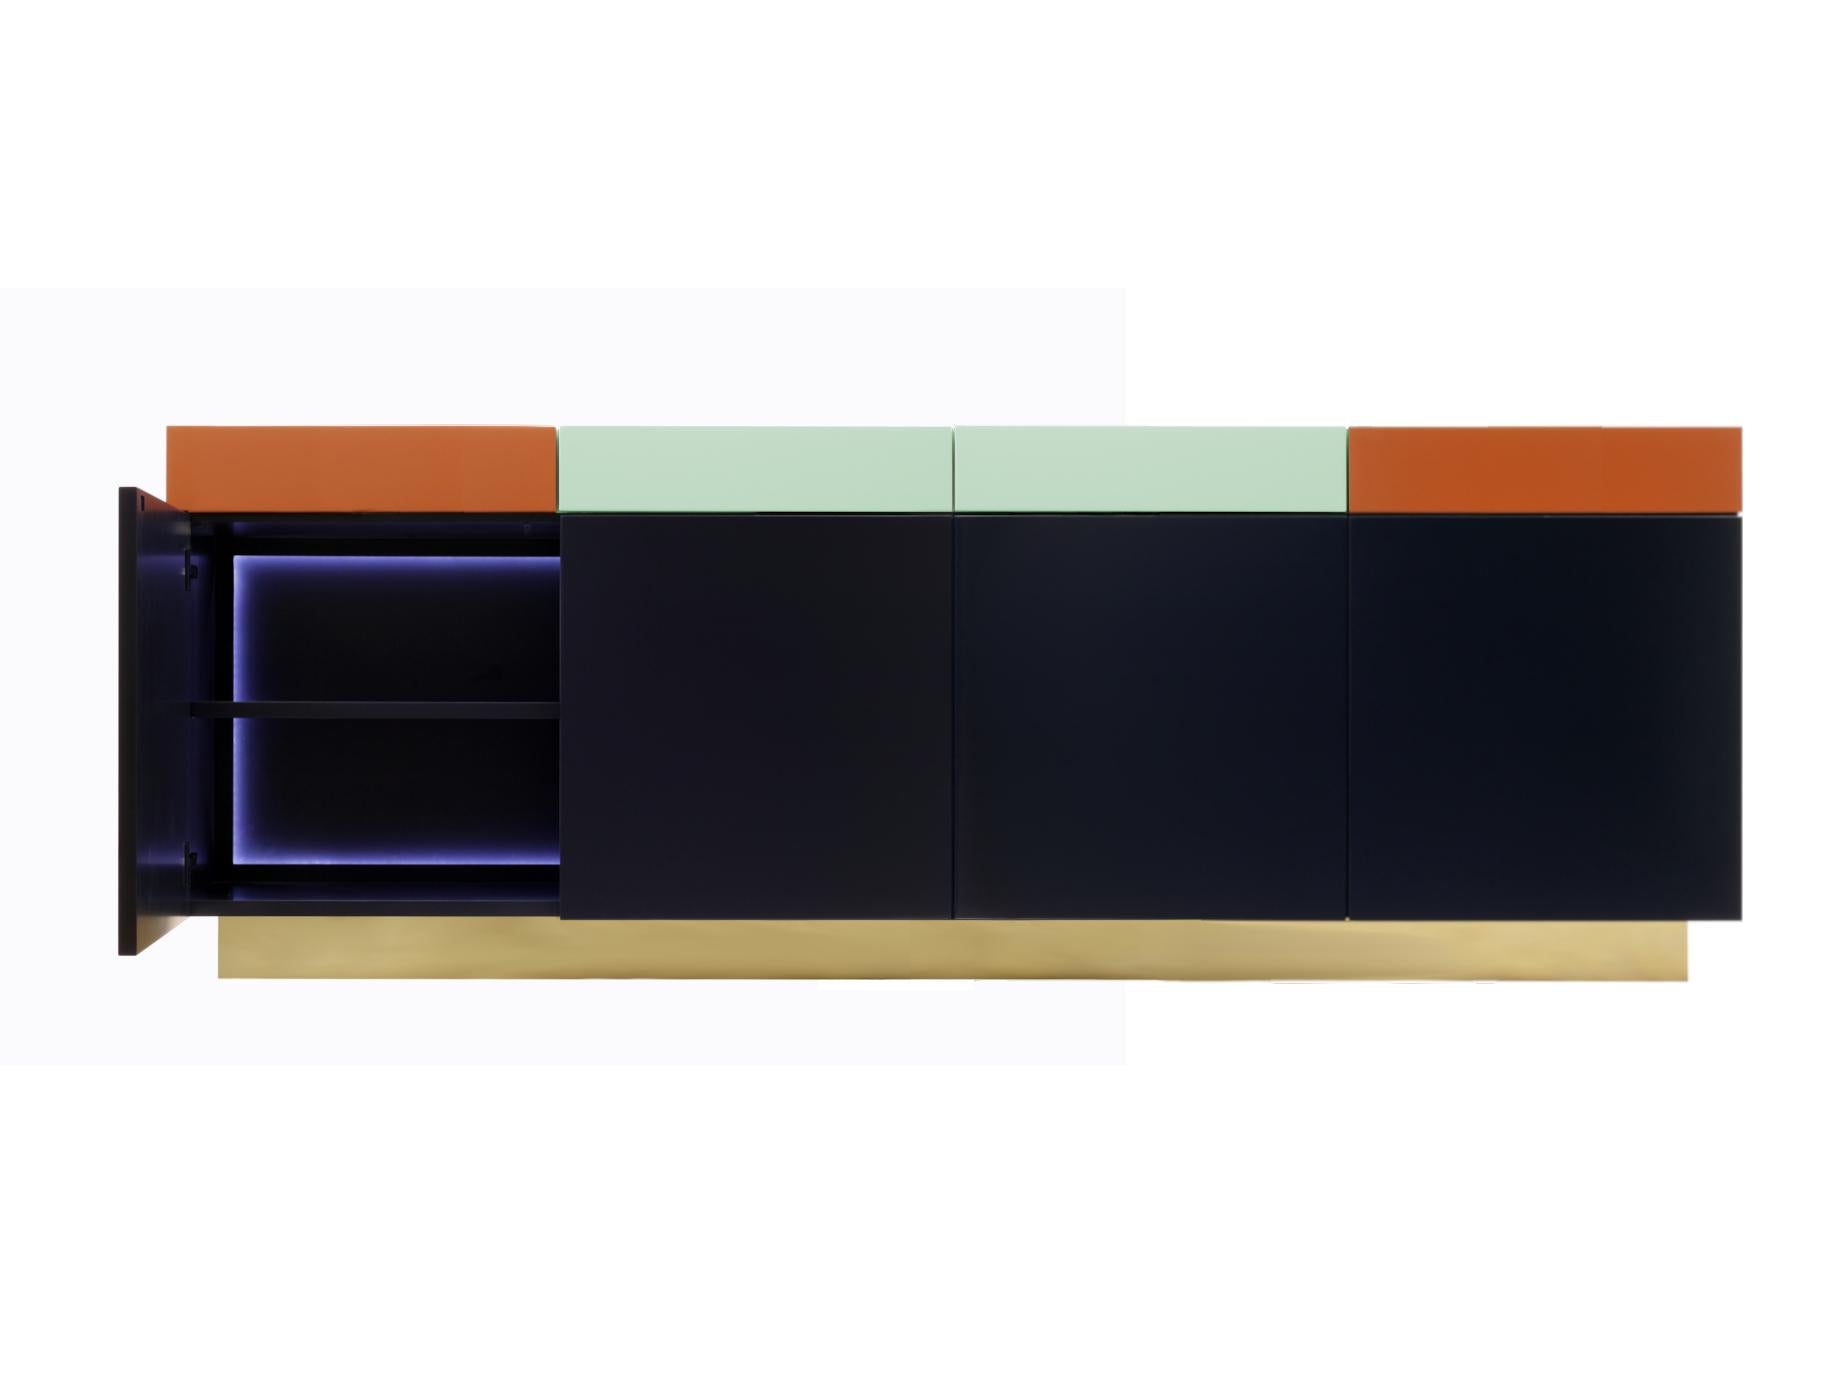 Un meuble fonctionnel et pratique, basé sur une élégance discrète, Greta combine un jeu de formes géométriques, de couleurs et de boiseries.
L'extérieur est formé par 4 tiroirs sur le dessus et 4 portes en dessous, tous avec la peinture couleur